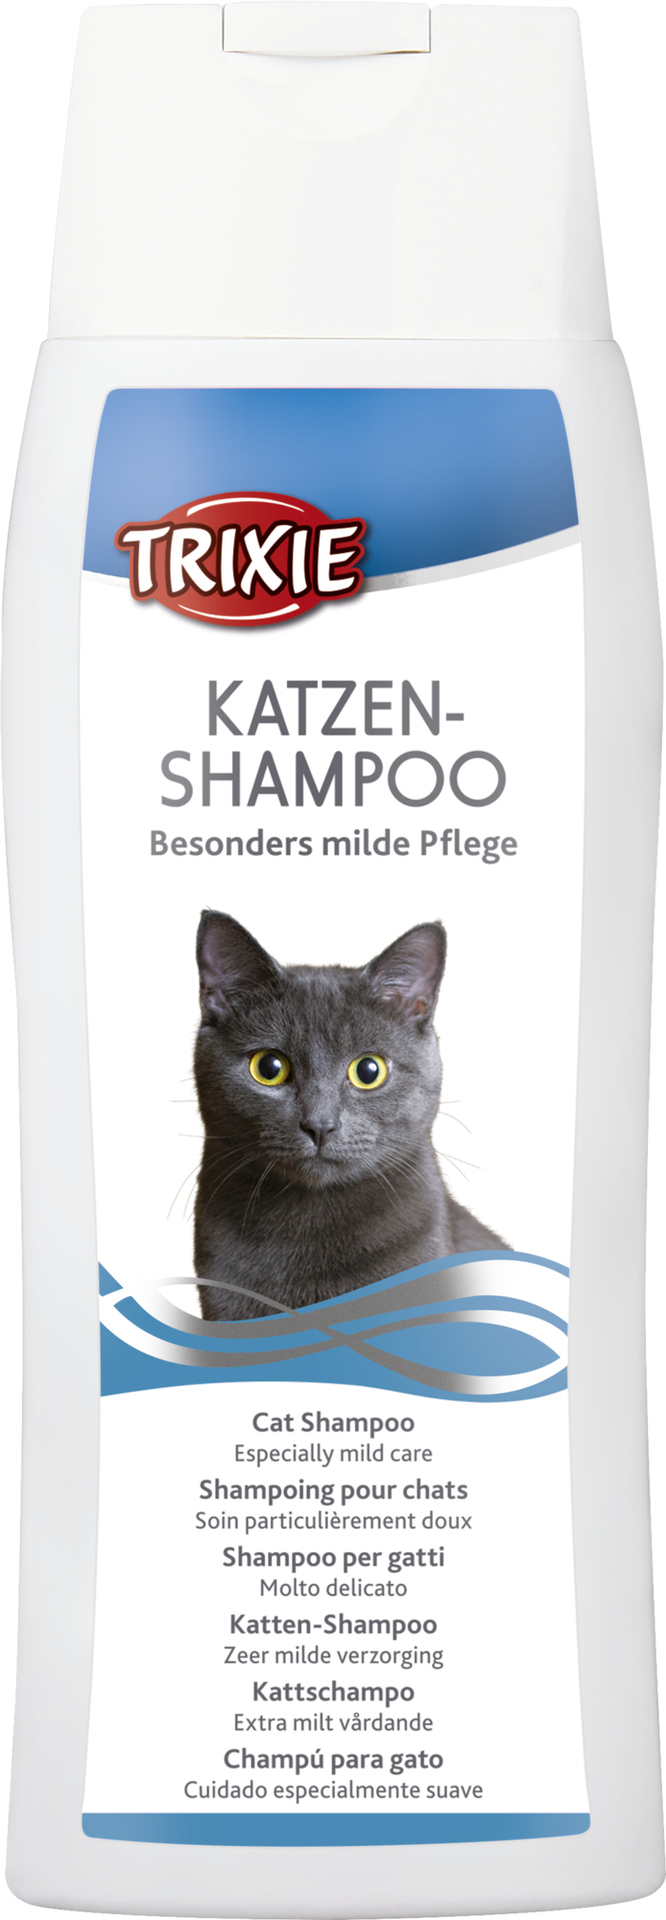 TRIXIE Katzen-Shampoo